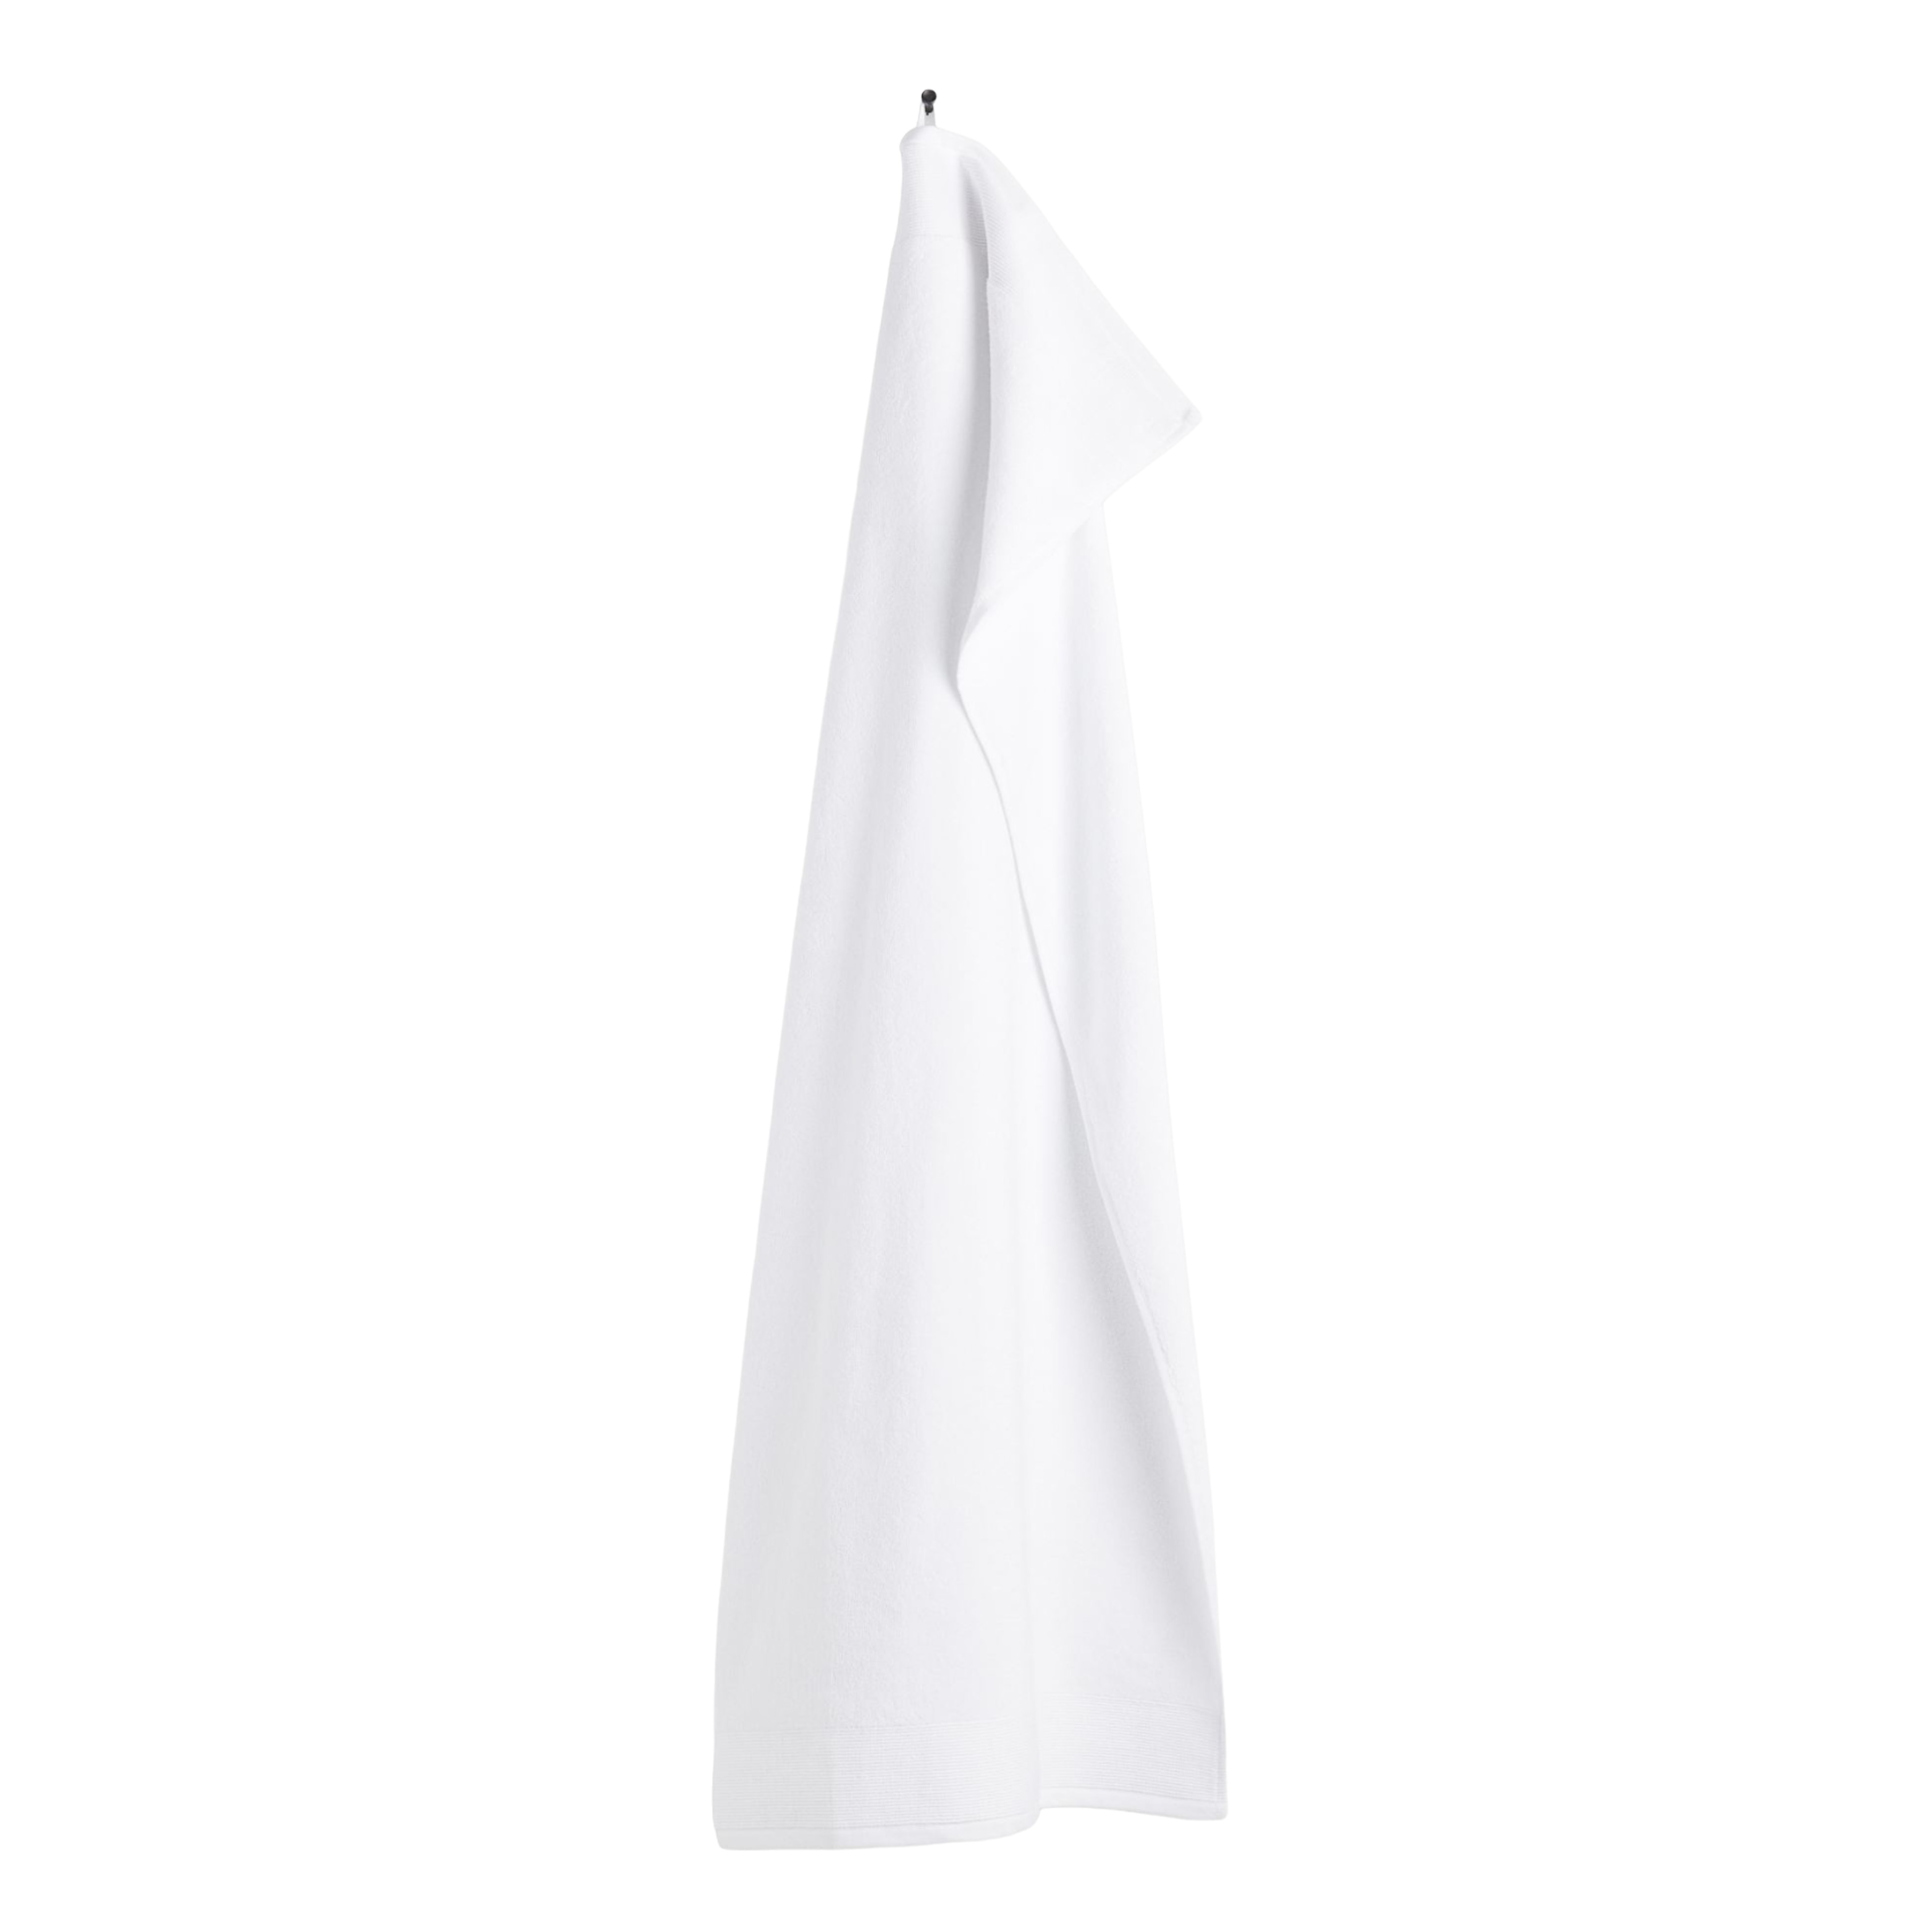 Банное полотенце H&M Home With Terry, белый женское полотенце из микрофибры полотенце для волос банное полотенце s для взрослых домашнее махровое полотенце s банное полотенце для су